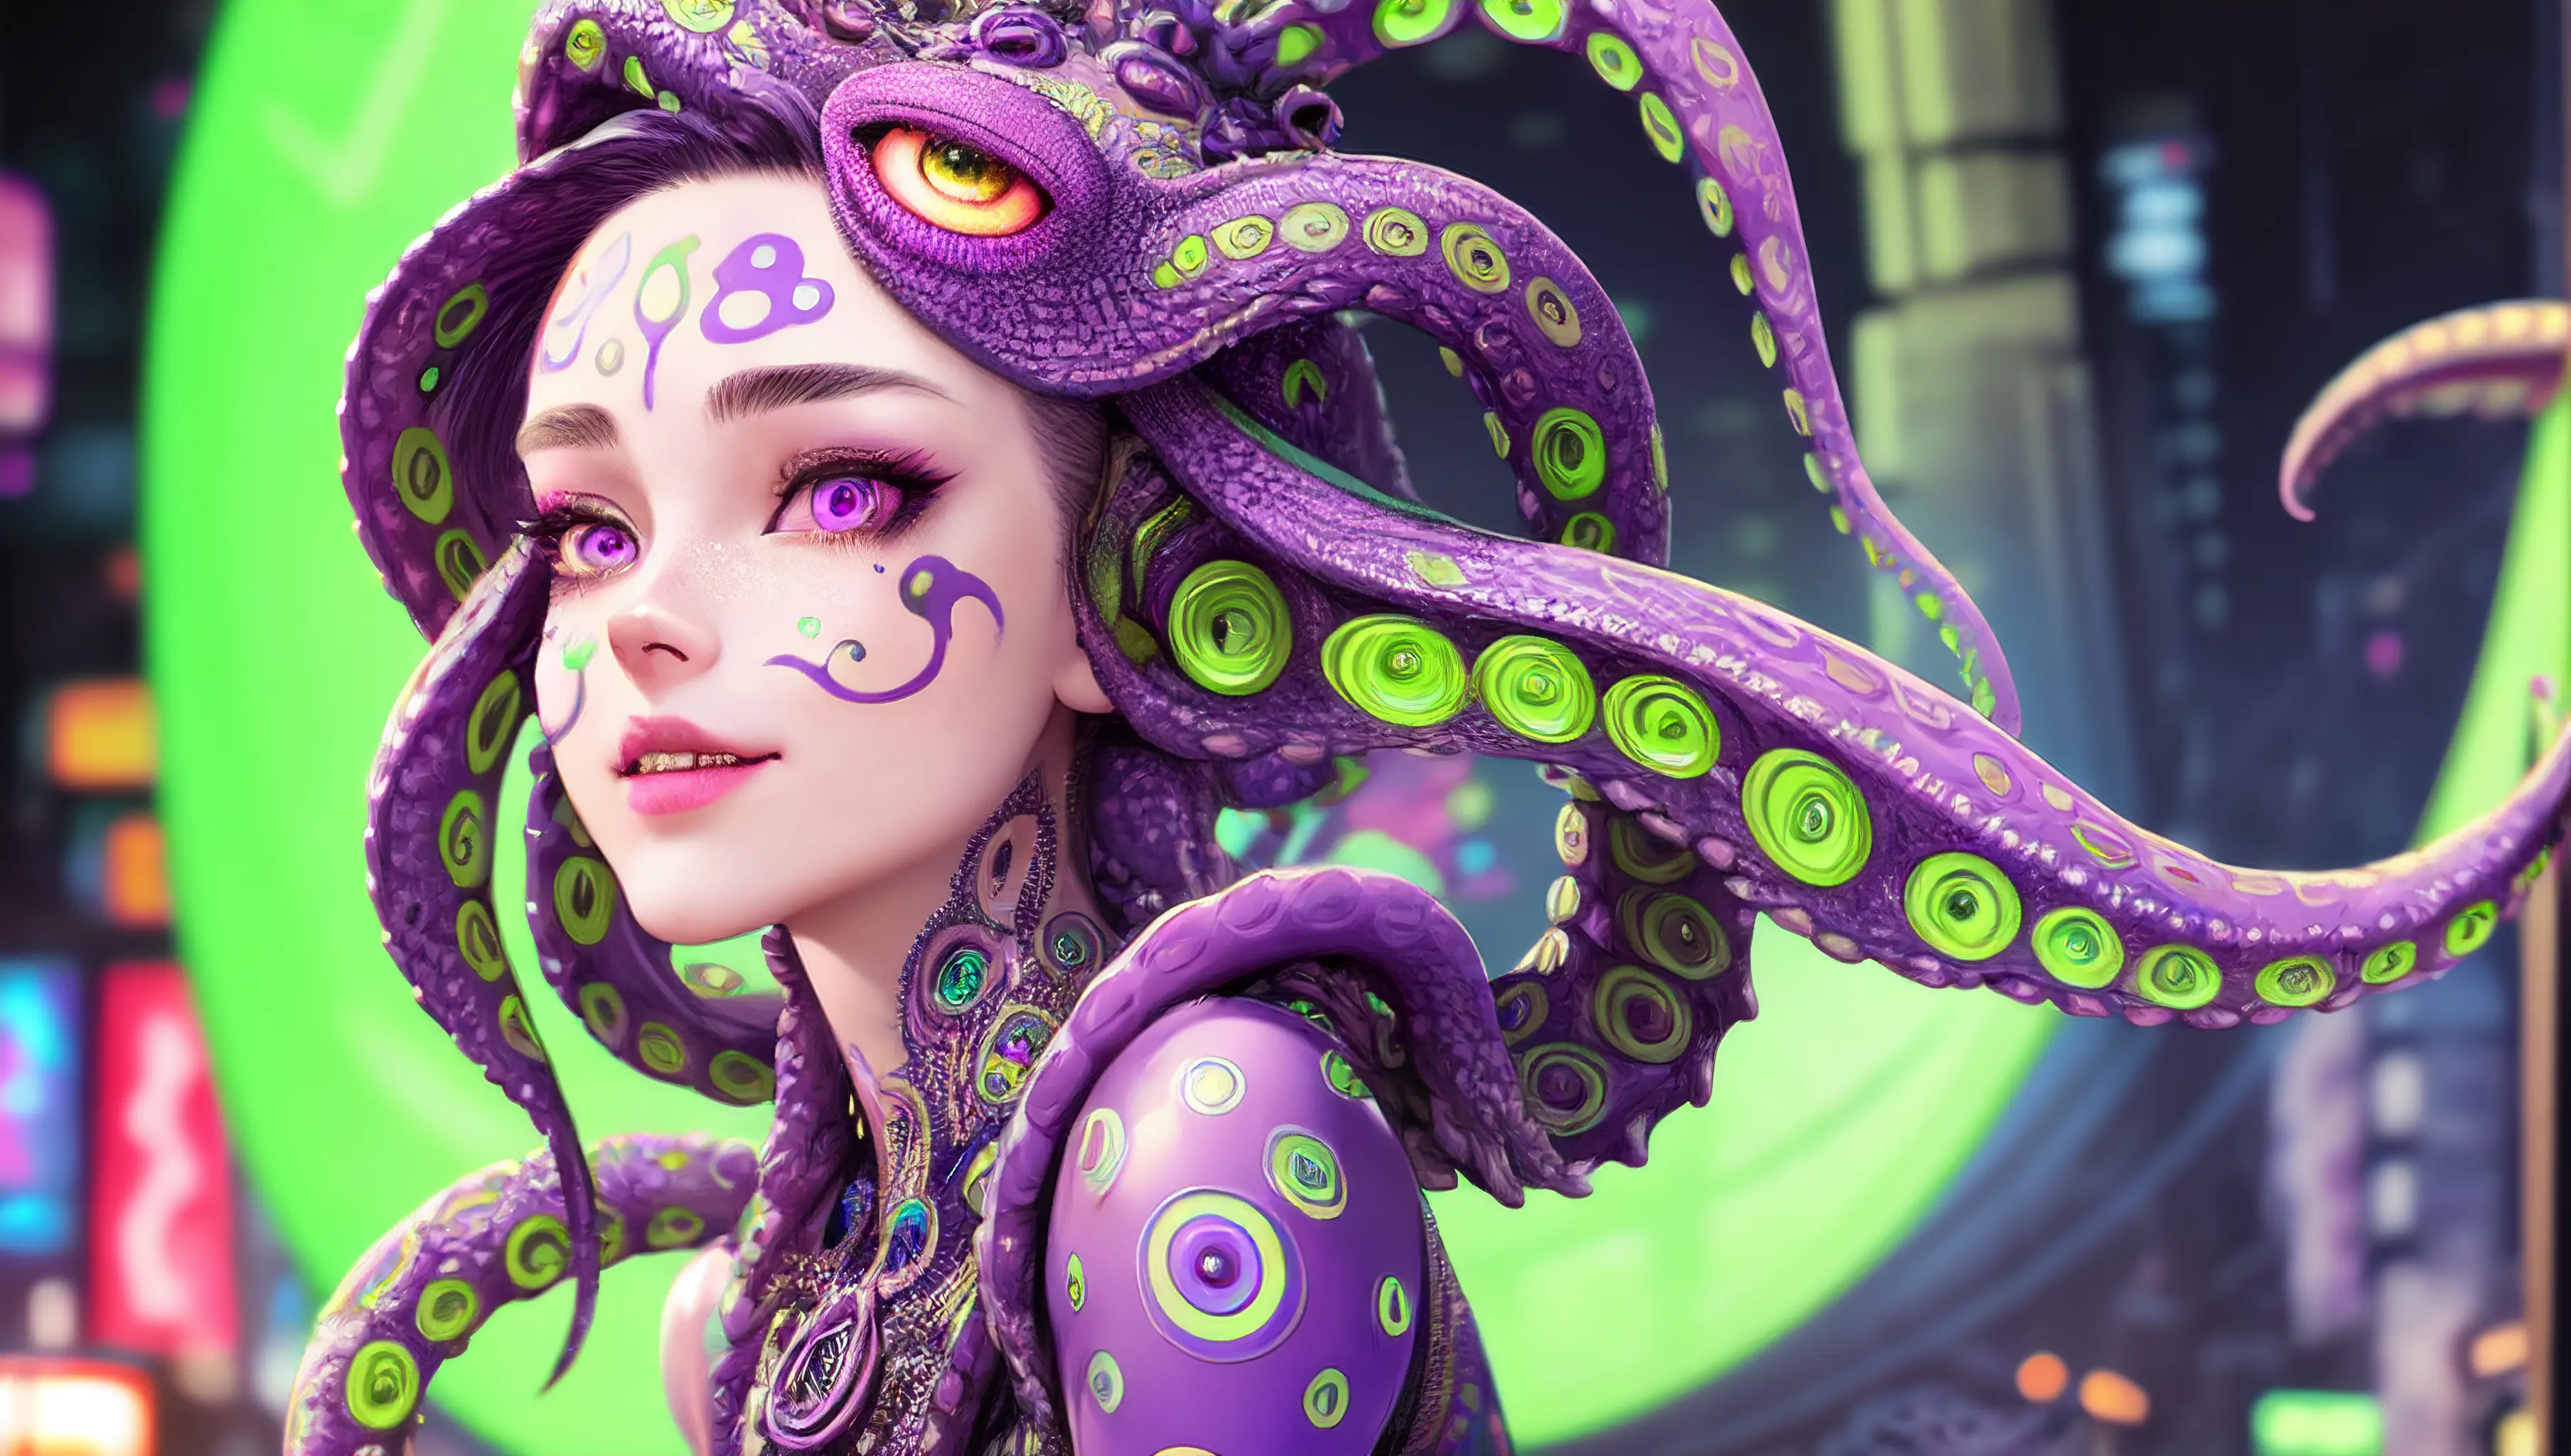 ((最好的品質)), ((傑作)), ((實際的)),  colorful intricate 非常詳細 octopus girl,金屬帳篷, 笑臉,  發光的霓虹綠和紫色眼睛,滴落的綠色帳篷, 頸部被霓虹圓圈圖案包圍,女性臉, , ArtStation 上的熱門話題, 銳利的焦點, 工作室照片, 複雜的細節, 非常詳細,  NSFW, 細緻的眼睛, 插圖, 非常詳細, 銳利的焦點, 數位渲染, 專業的, 4k,